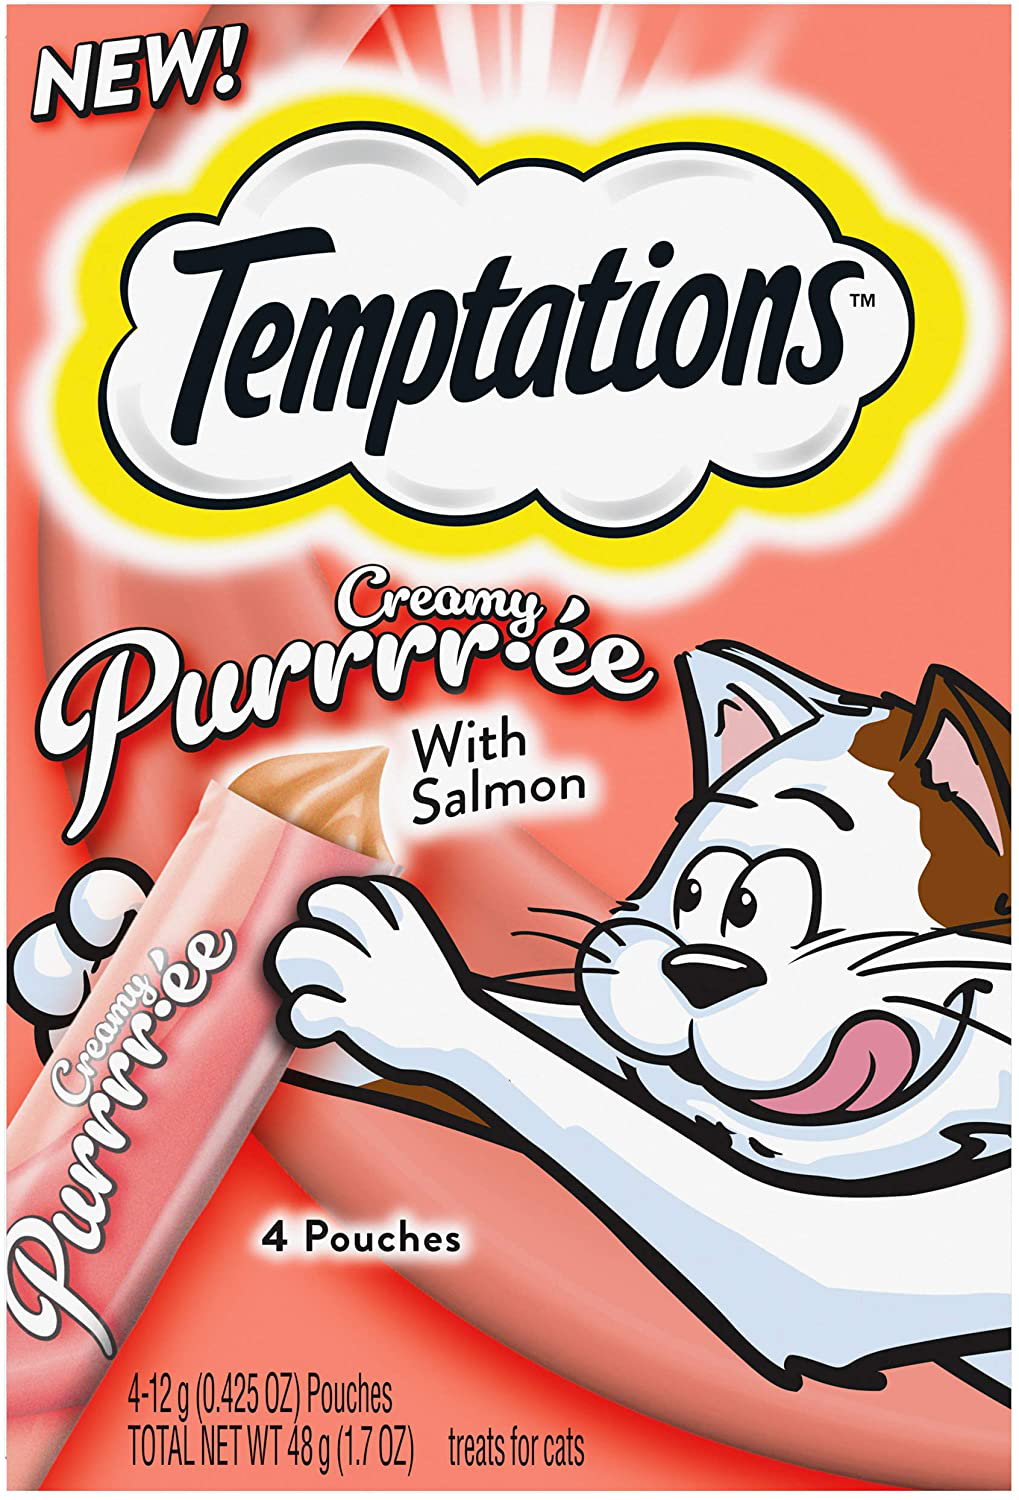 Temptations Creamy Purrrr-Ee Lickable Purée Cat Treats, 44 Pouches, Multiple Flavors